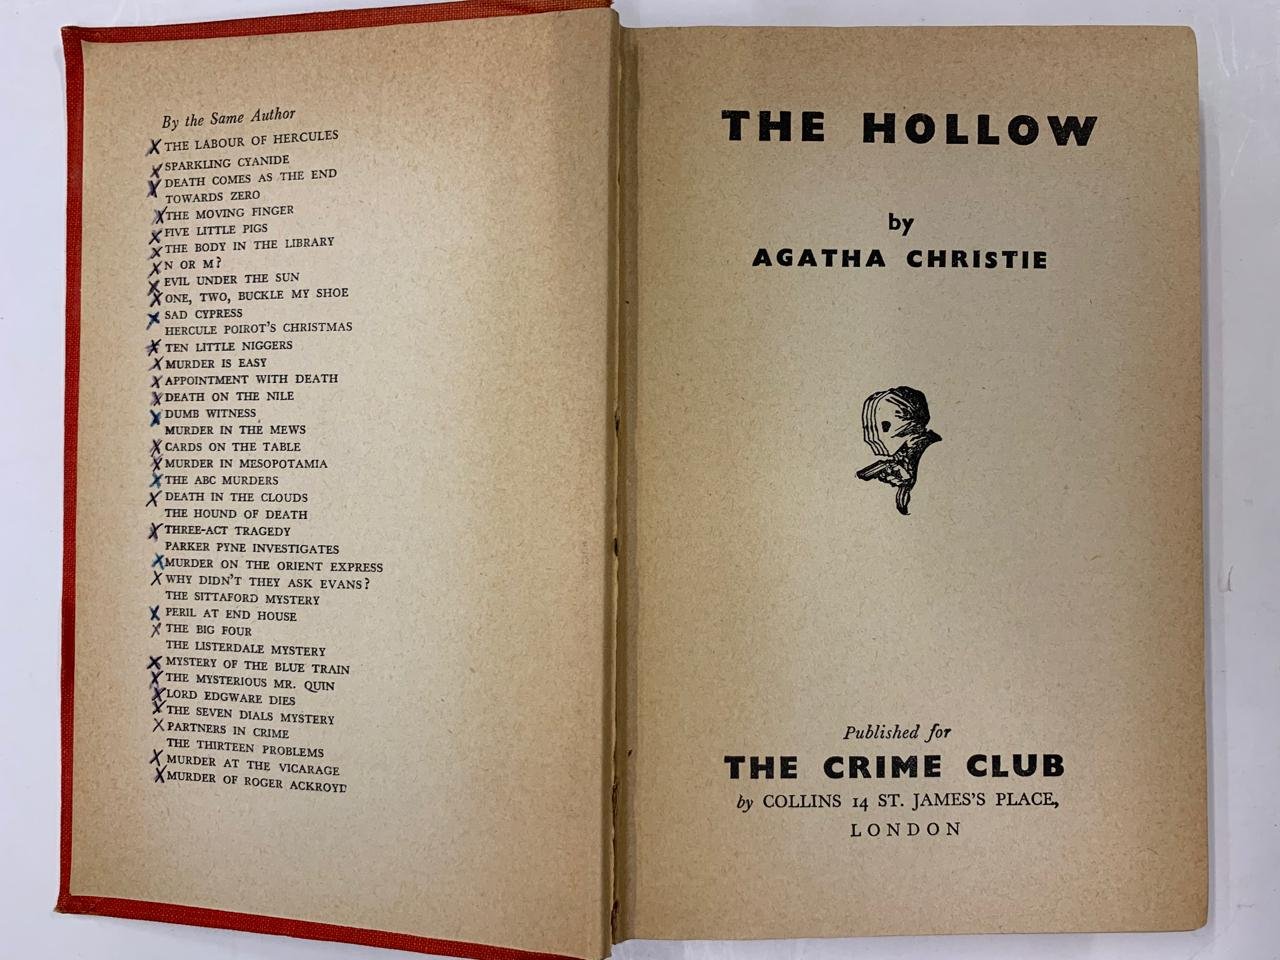 Agatha Christie - The Hollow